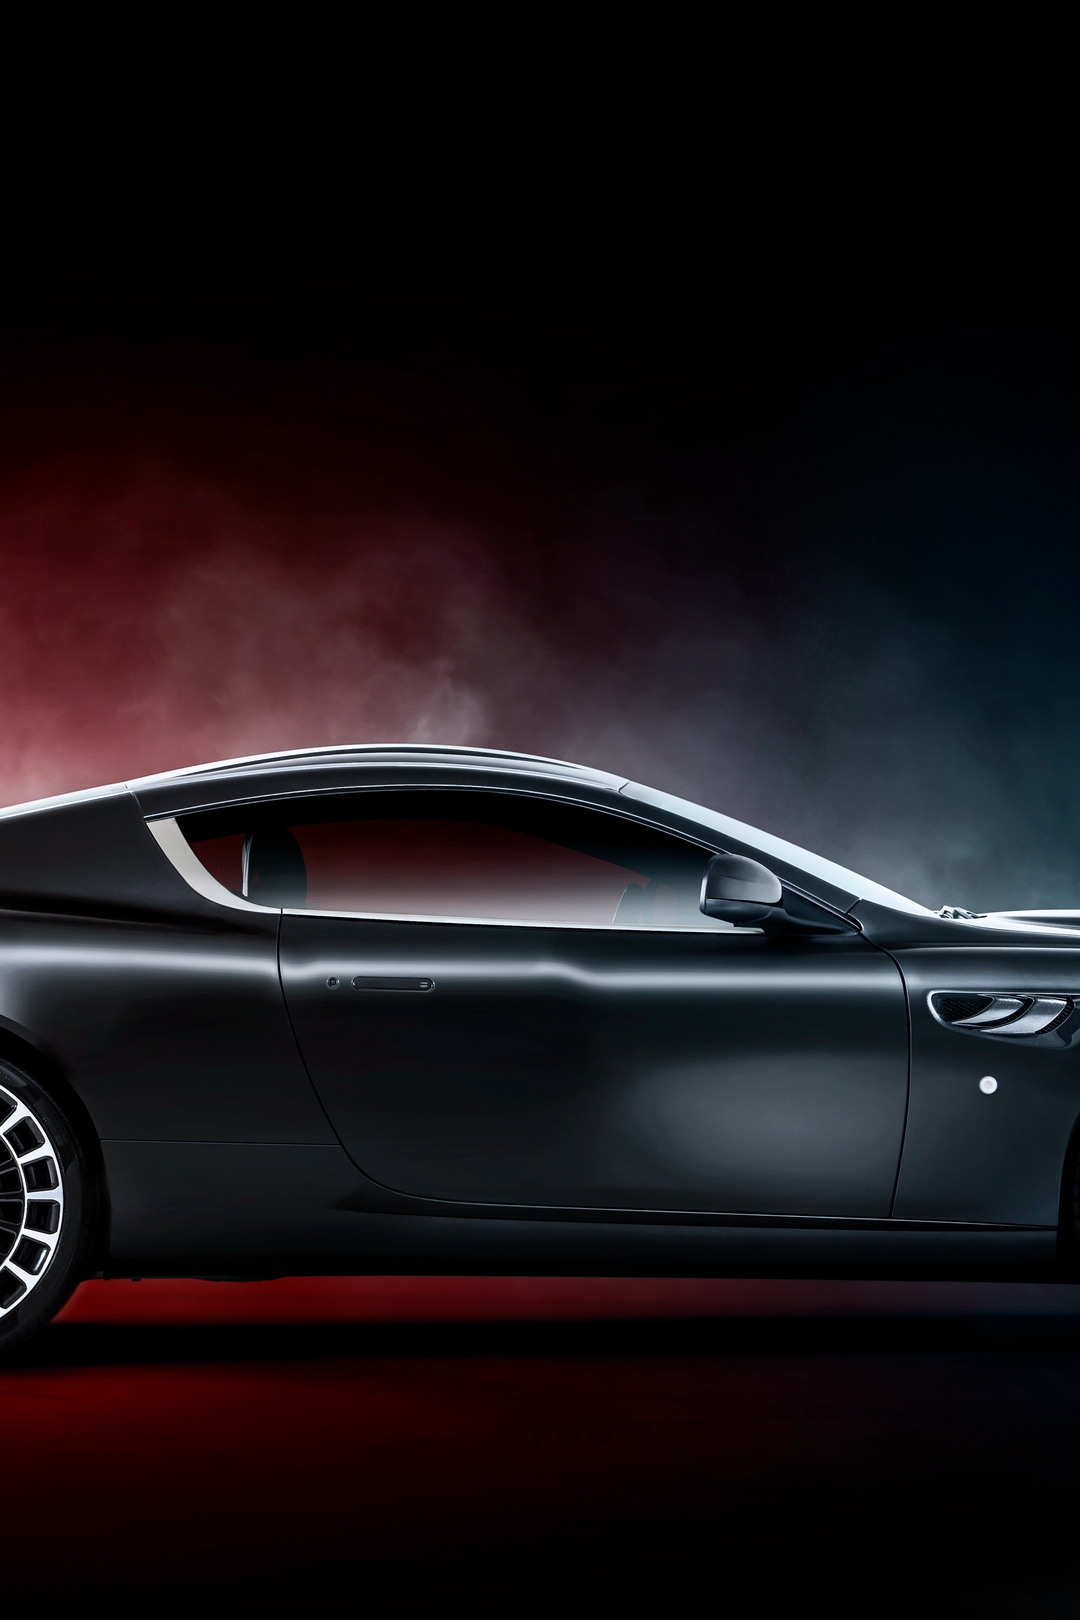 Картинка: Автомобиль, дымка, суперкар, чёрный, колёса, Aston Martin